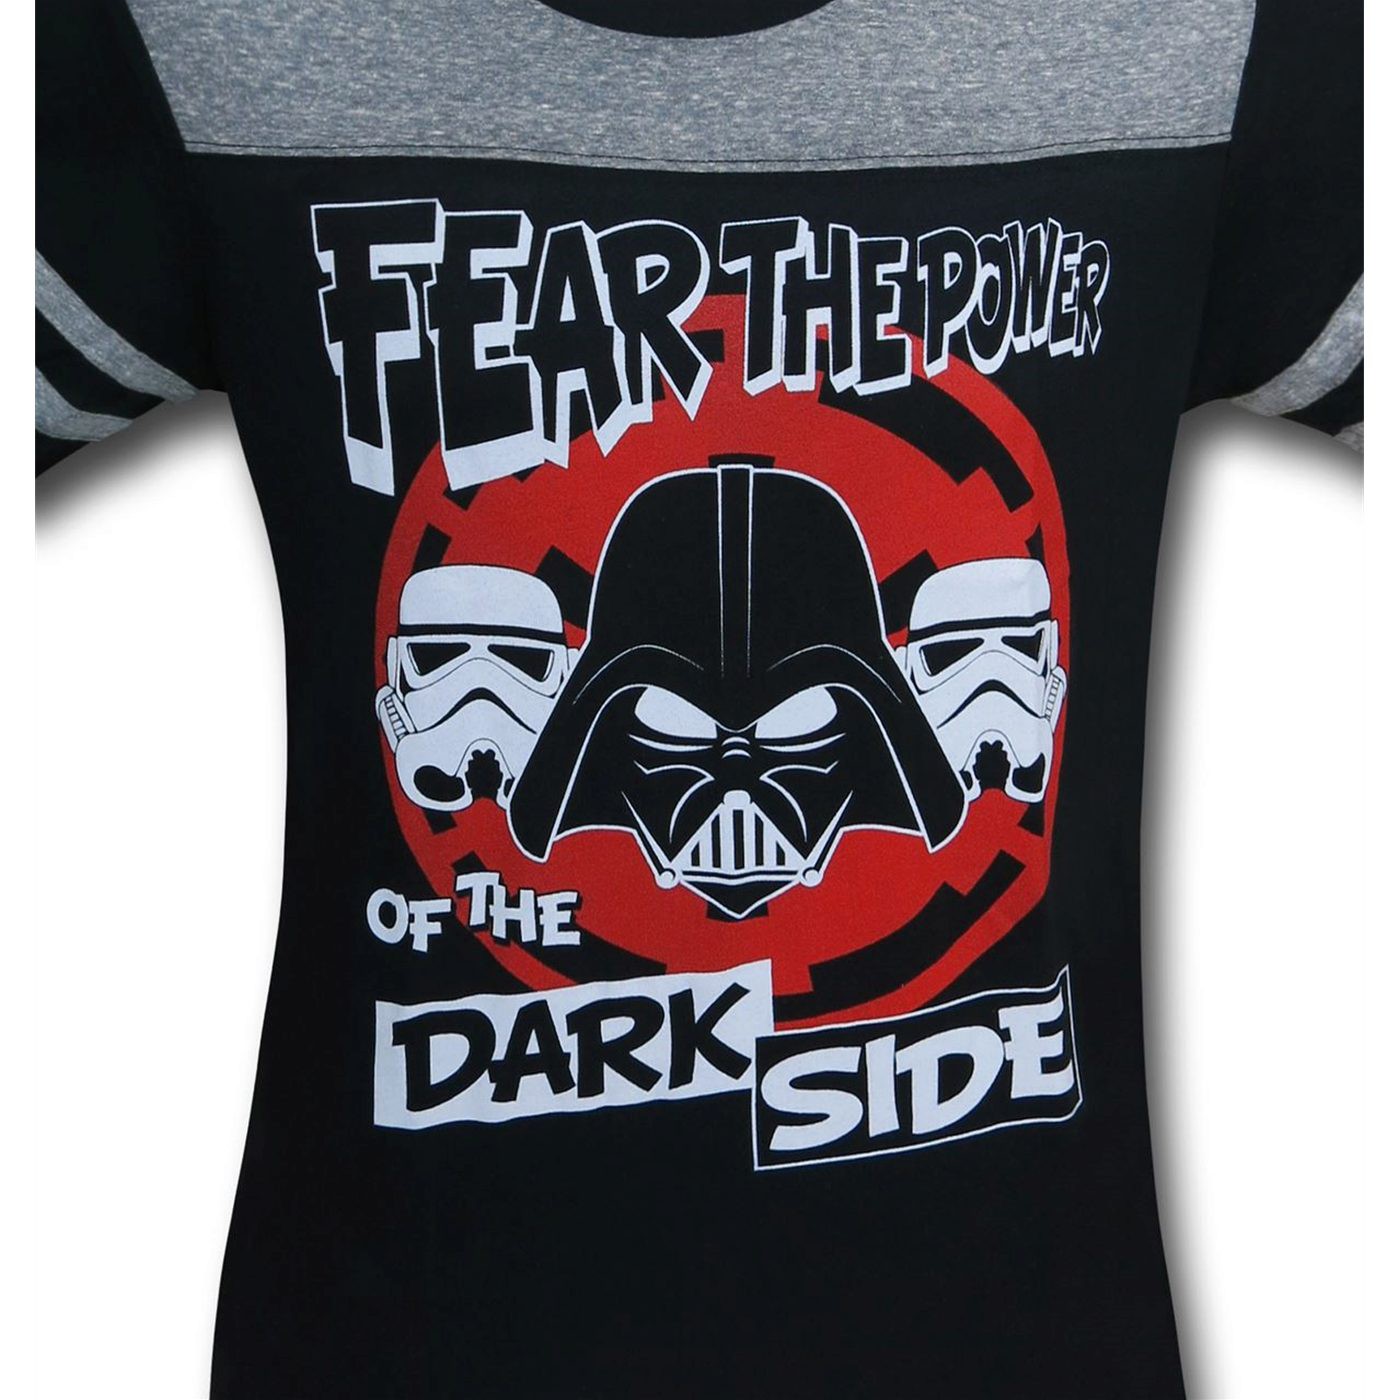 Star Wars Vader Dark Deeds Kids T-Shirt